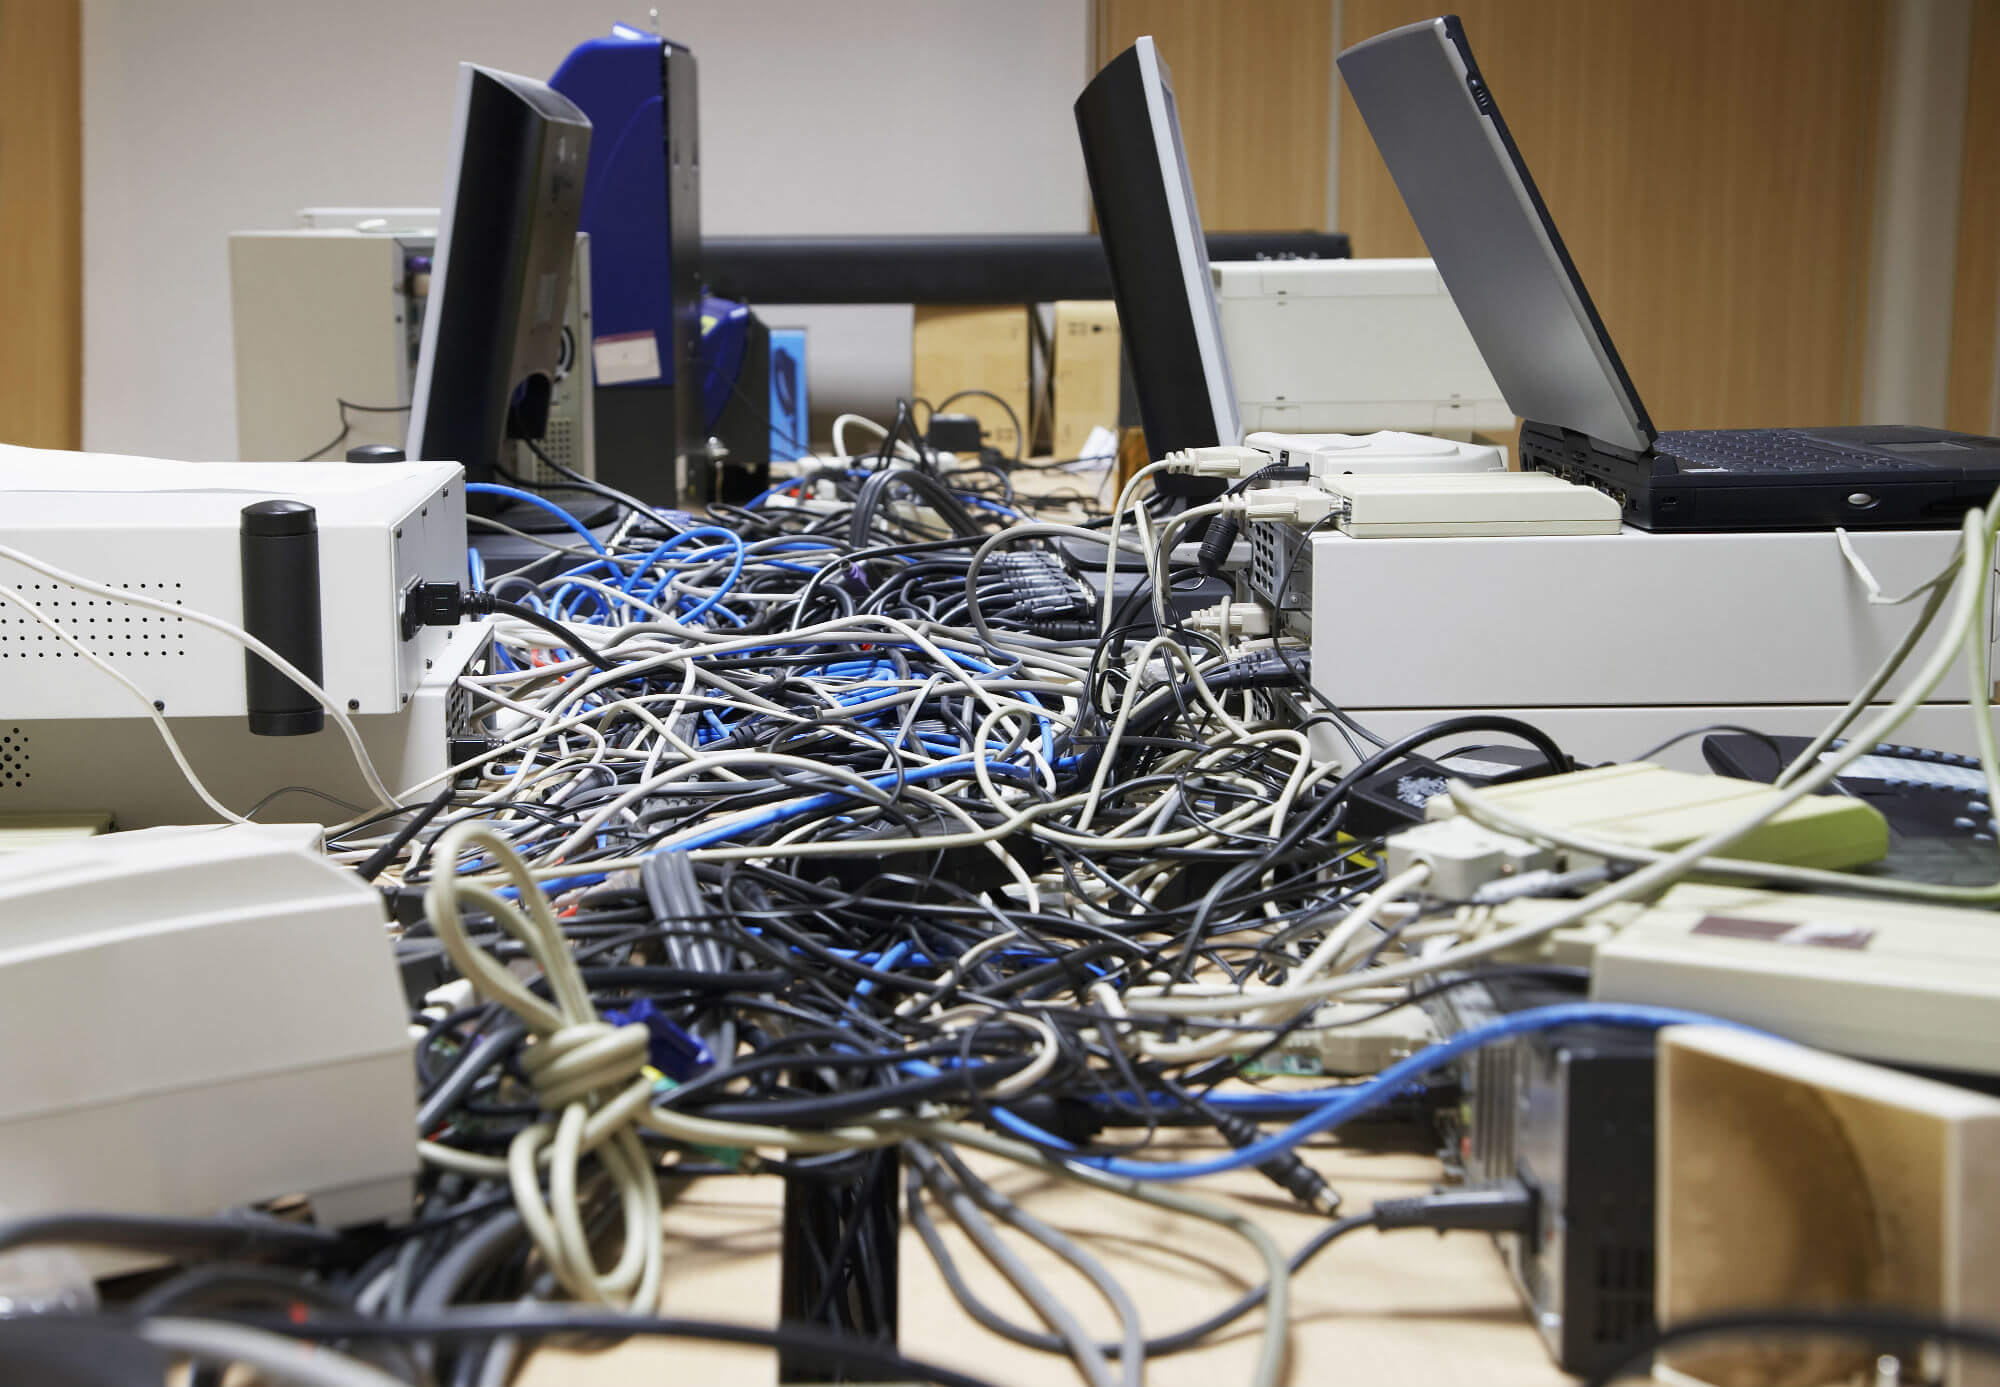 Comment gérer correctement les câbles sur votre lieu de travail